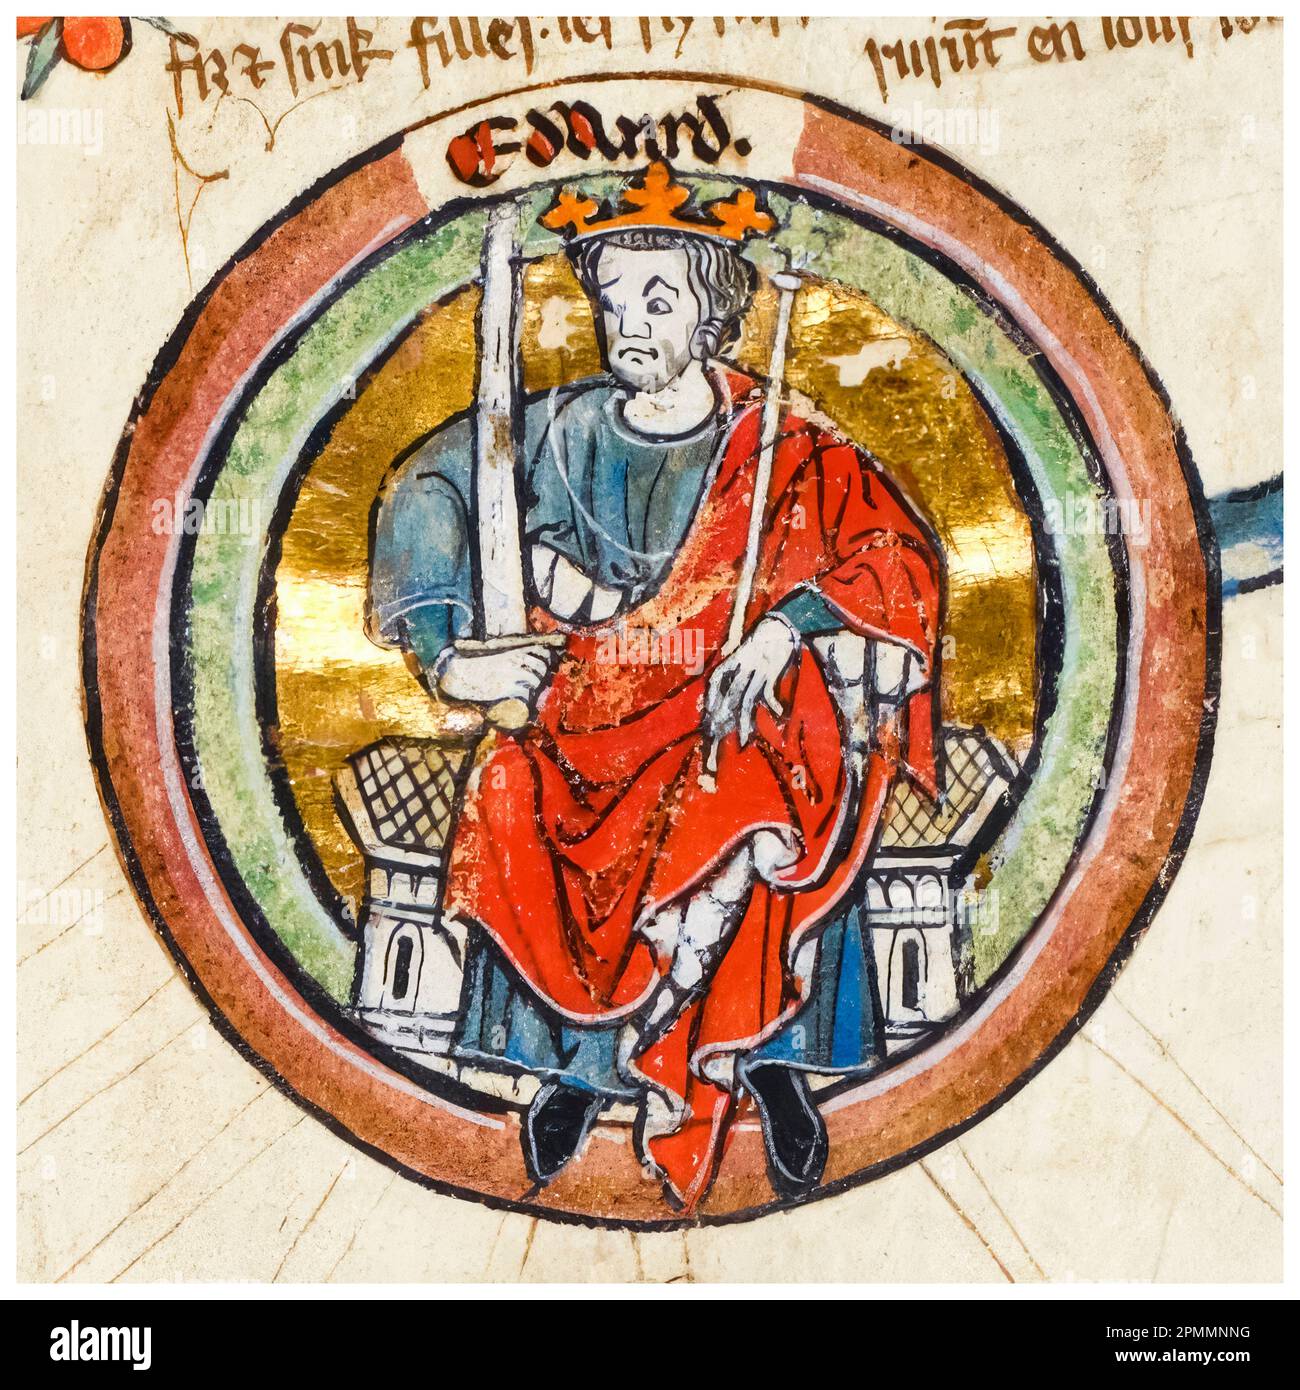 Edward I von England (1239-1307), auch bekannt als Edward Longshanks, und der Hammer der Schotten war König von England (1272-1307), beleuchtete Manuskripte Porträtmalerei, vor 1399 Stockfoto